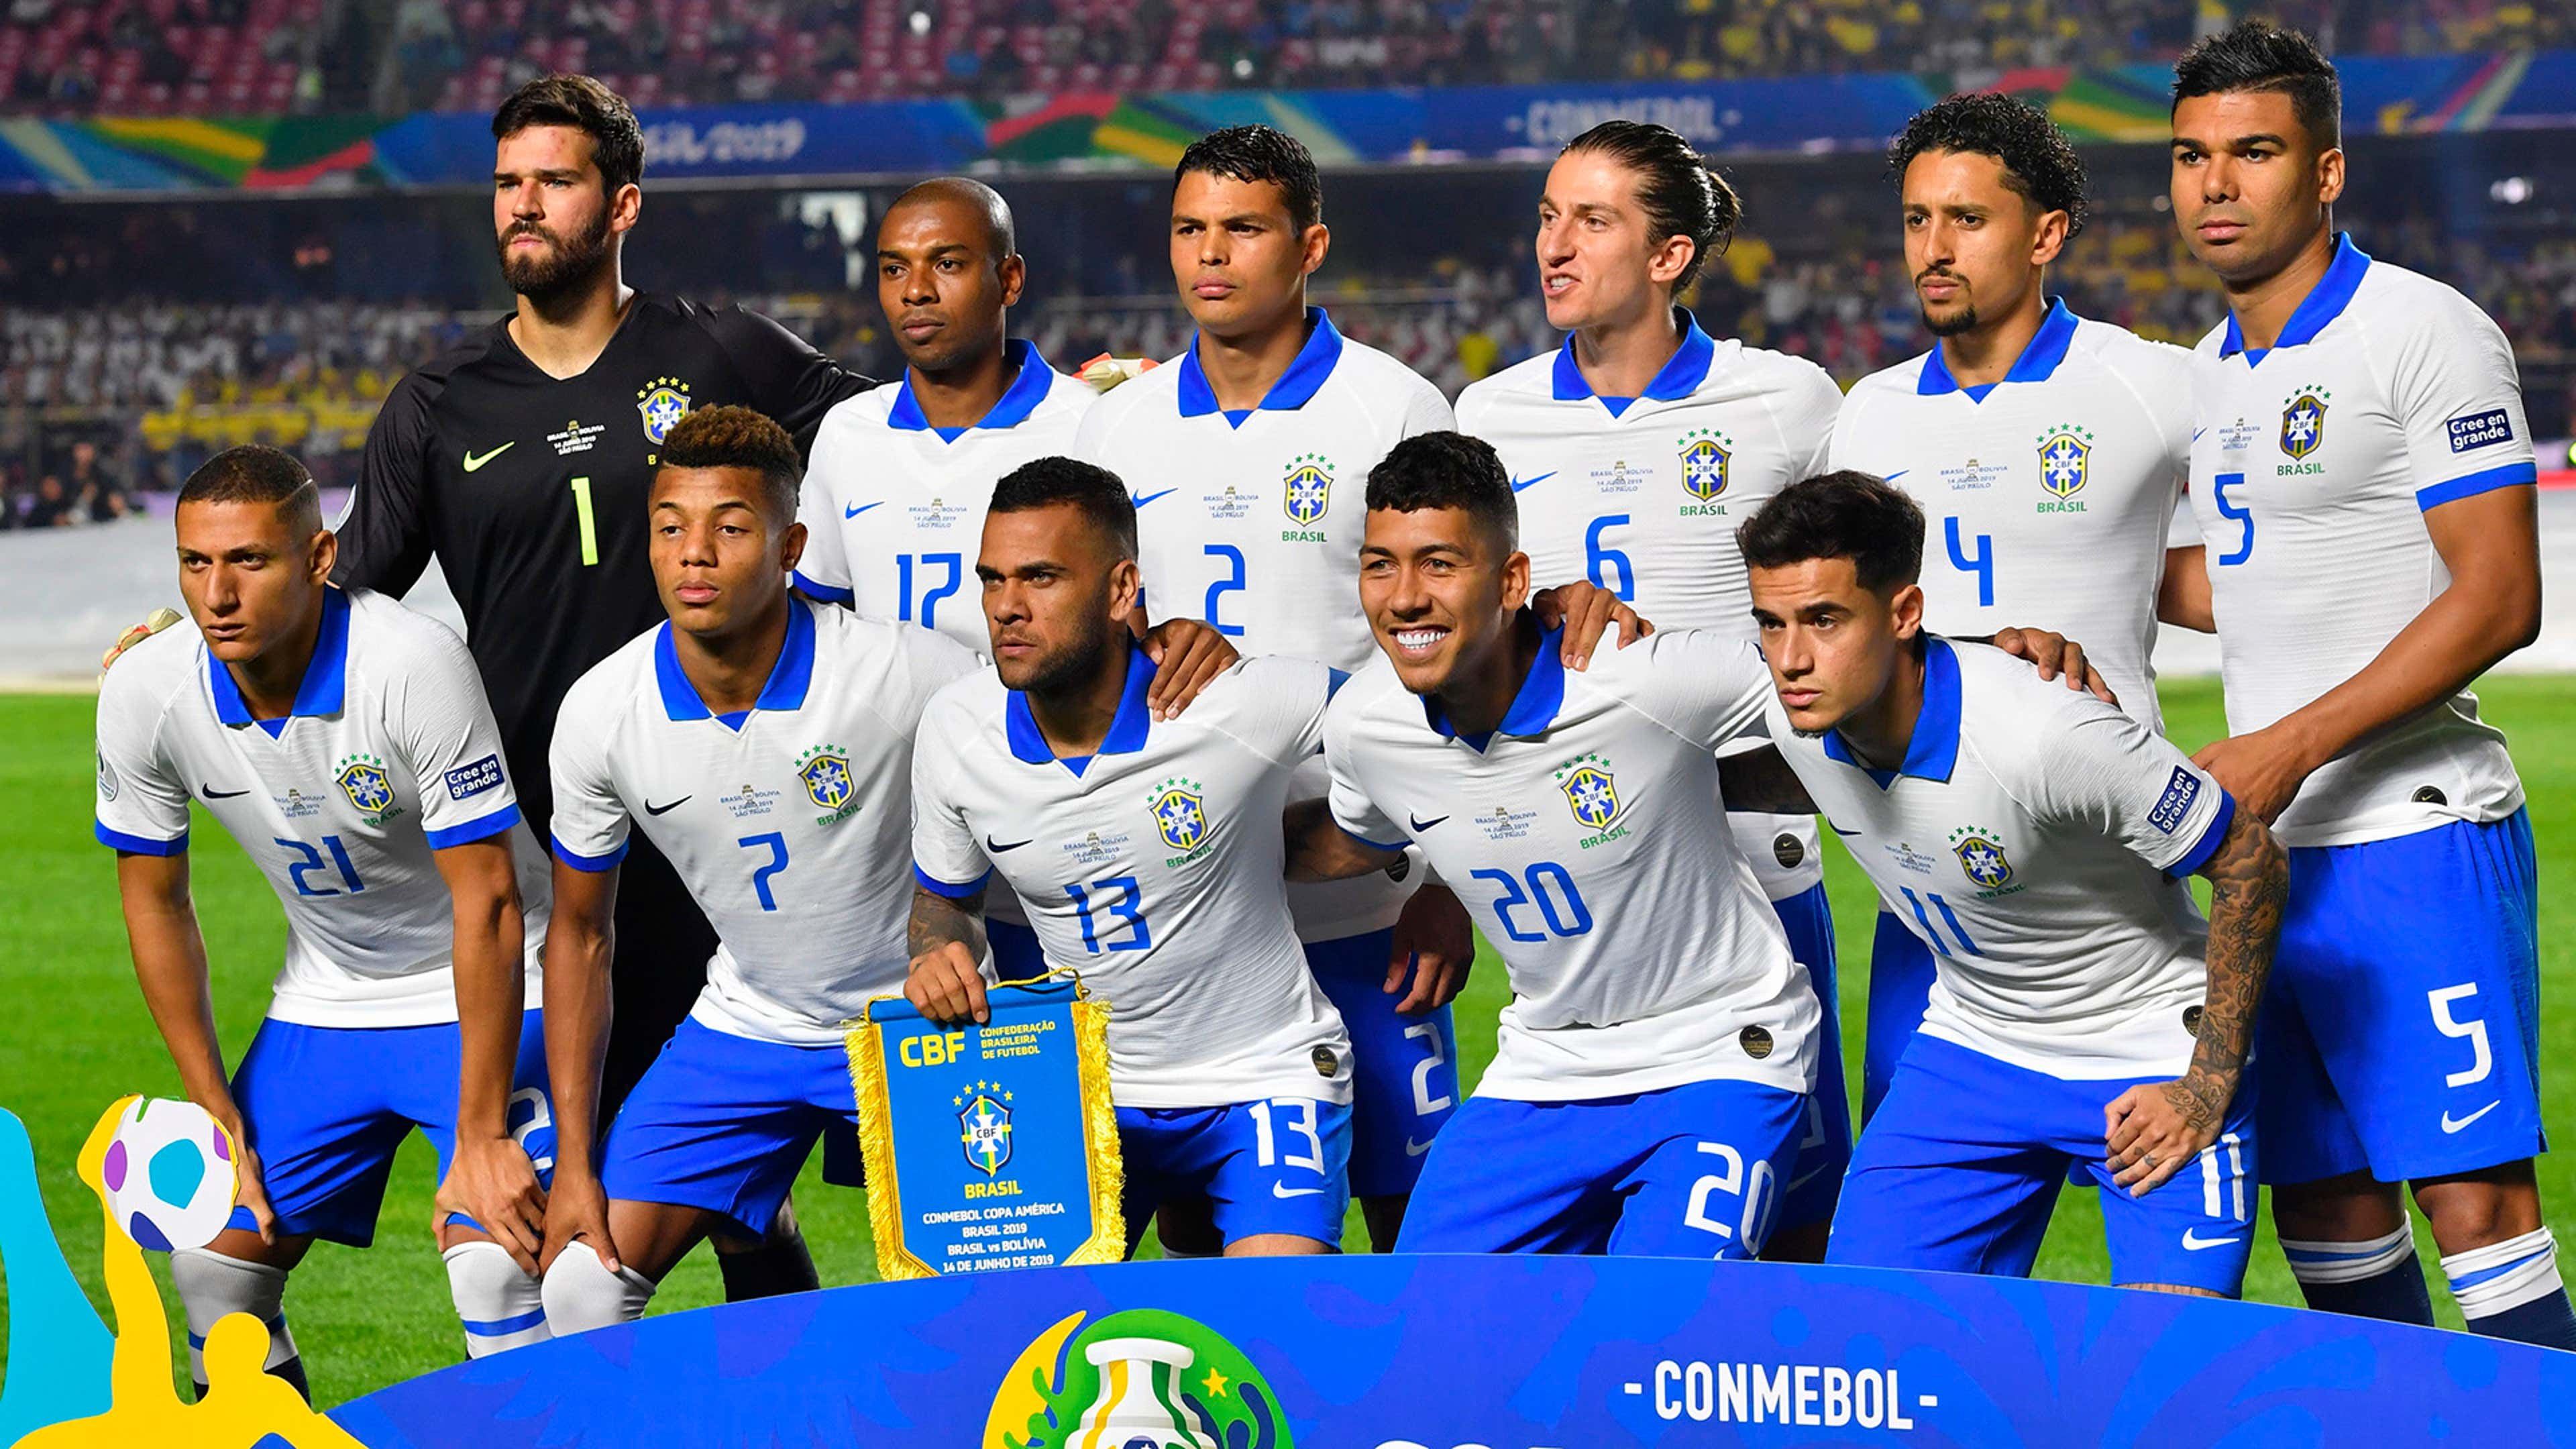 Por que o Brasil está jogando de branco?